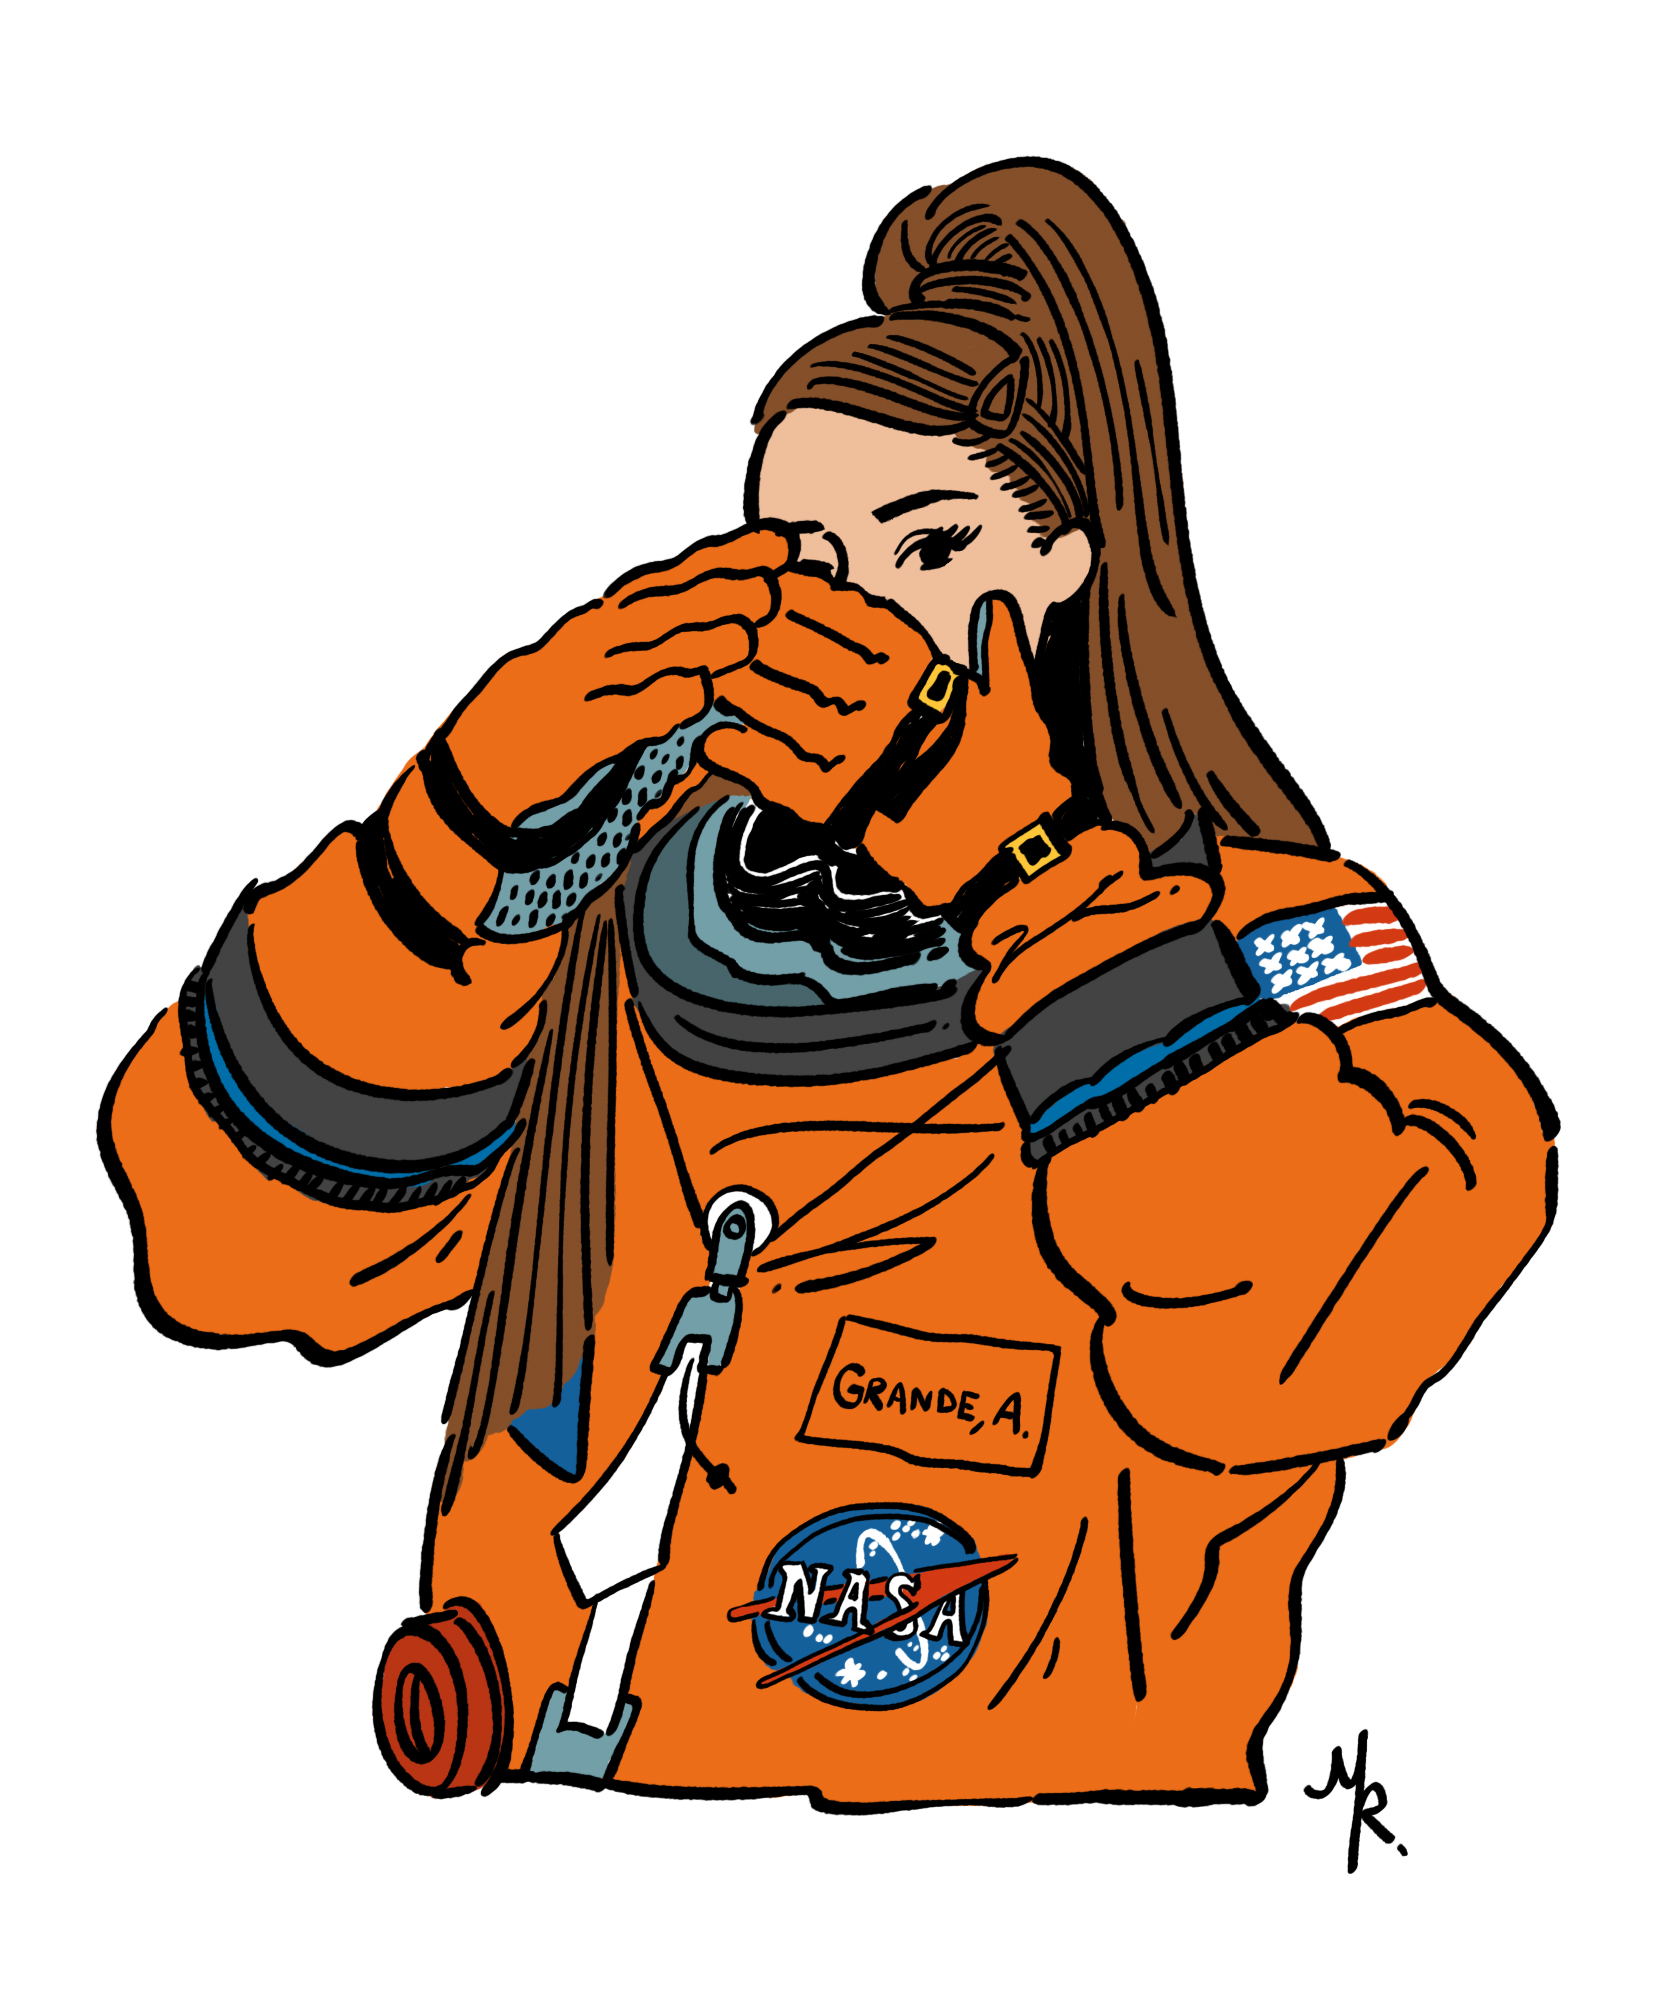 Ariana Grande at  NASA